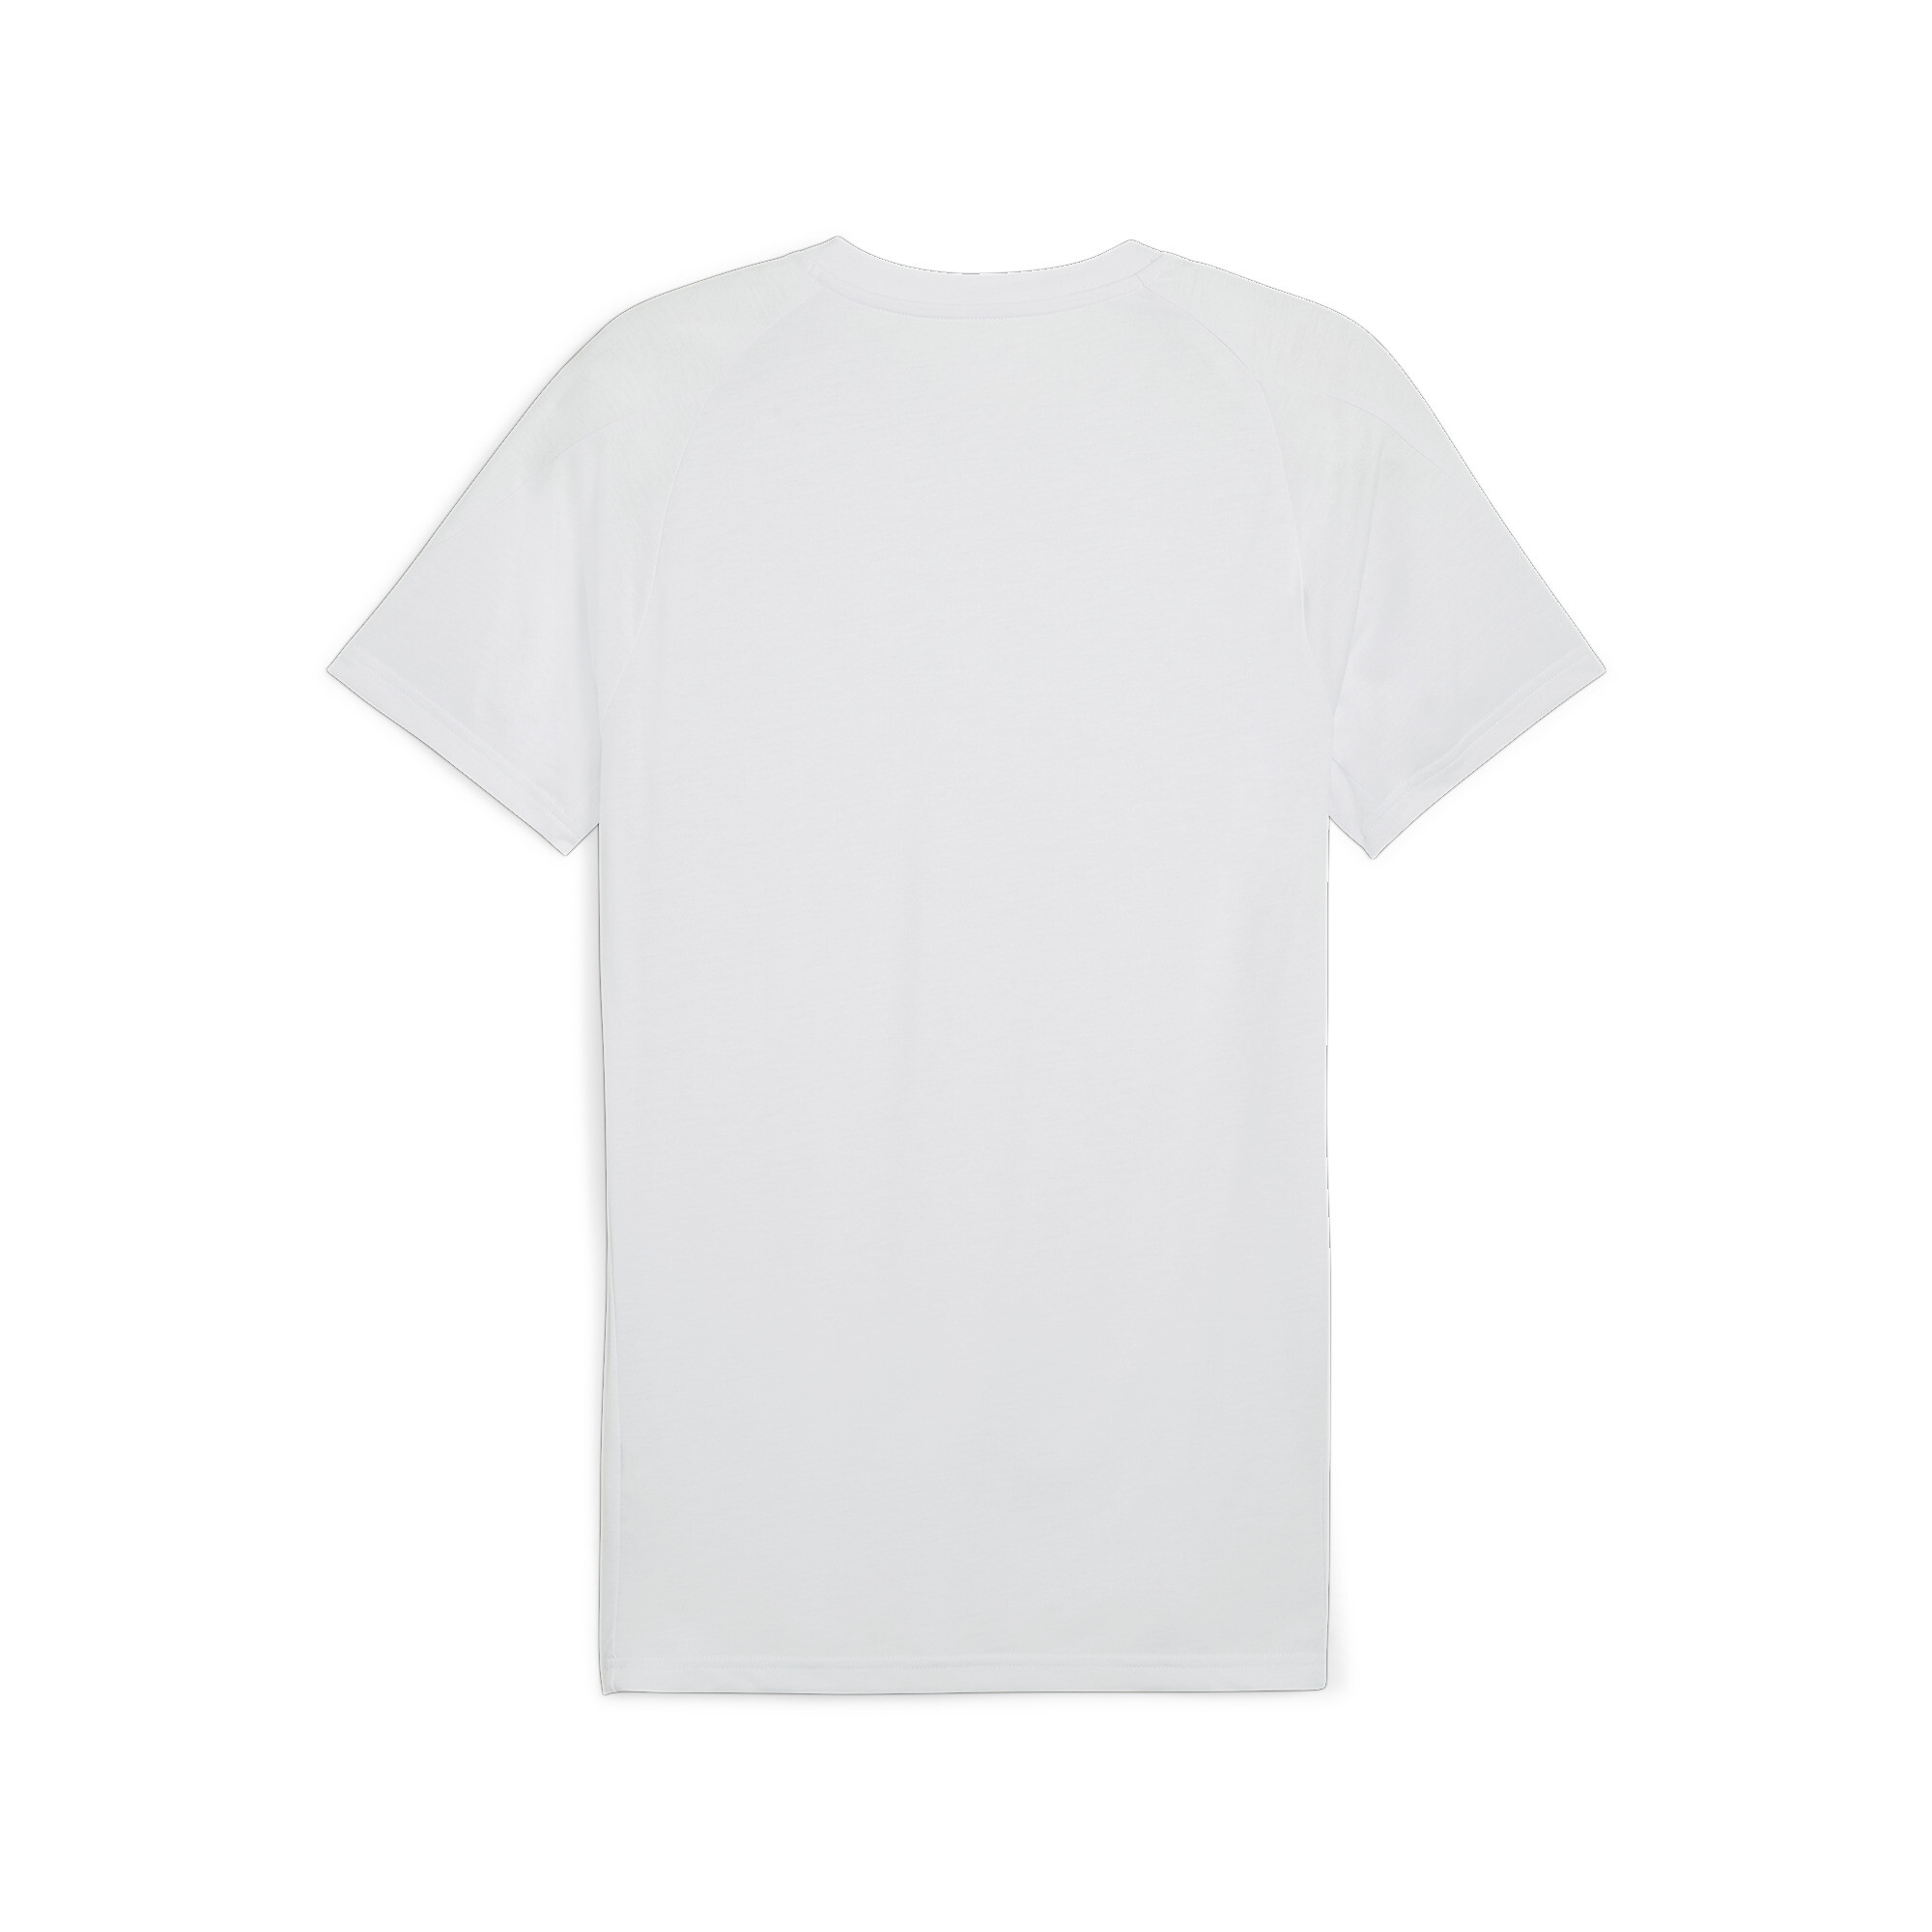 Men's PUMA EVOSTRIPE T-Shirt In Gray, Size Small